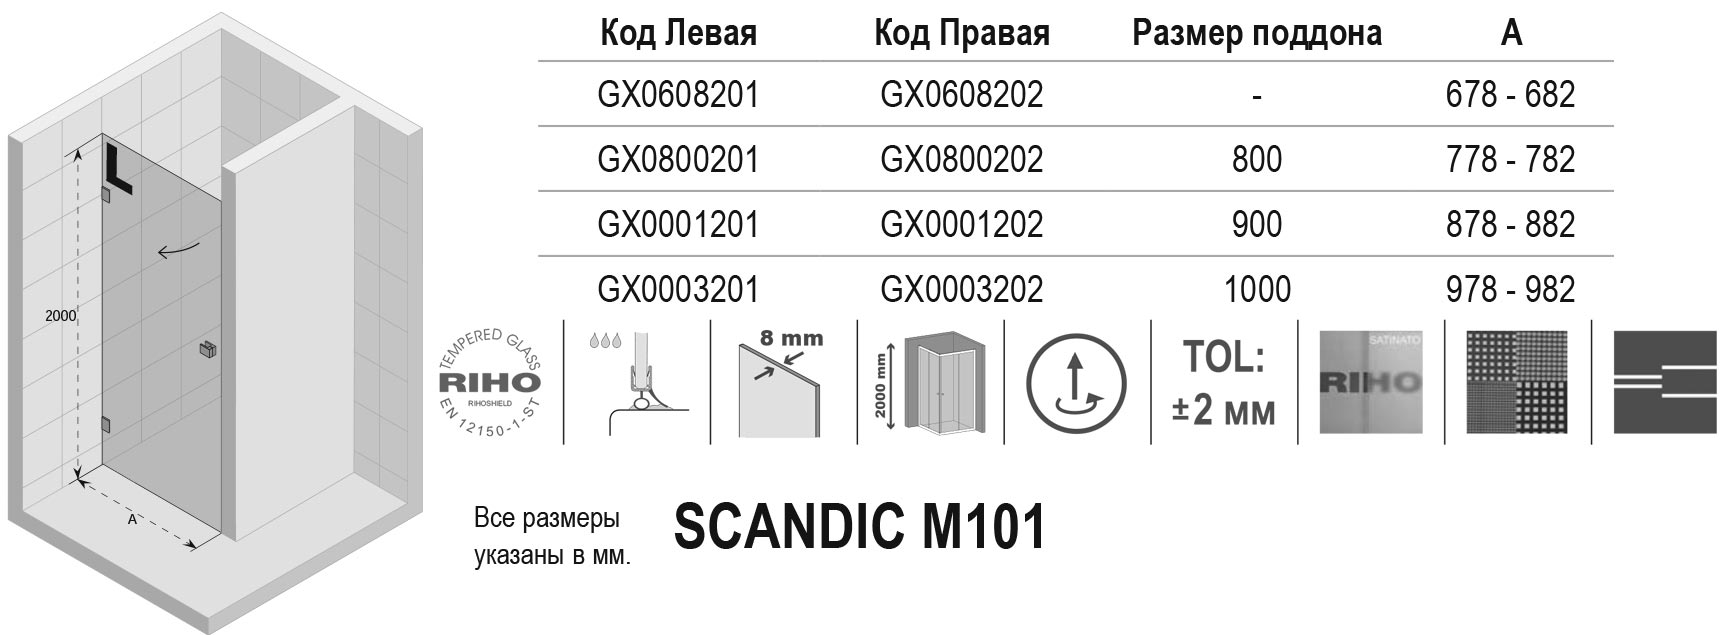 Чертёж Riho Scandic M101